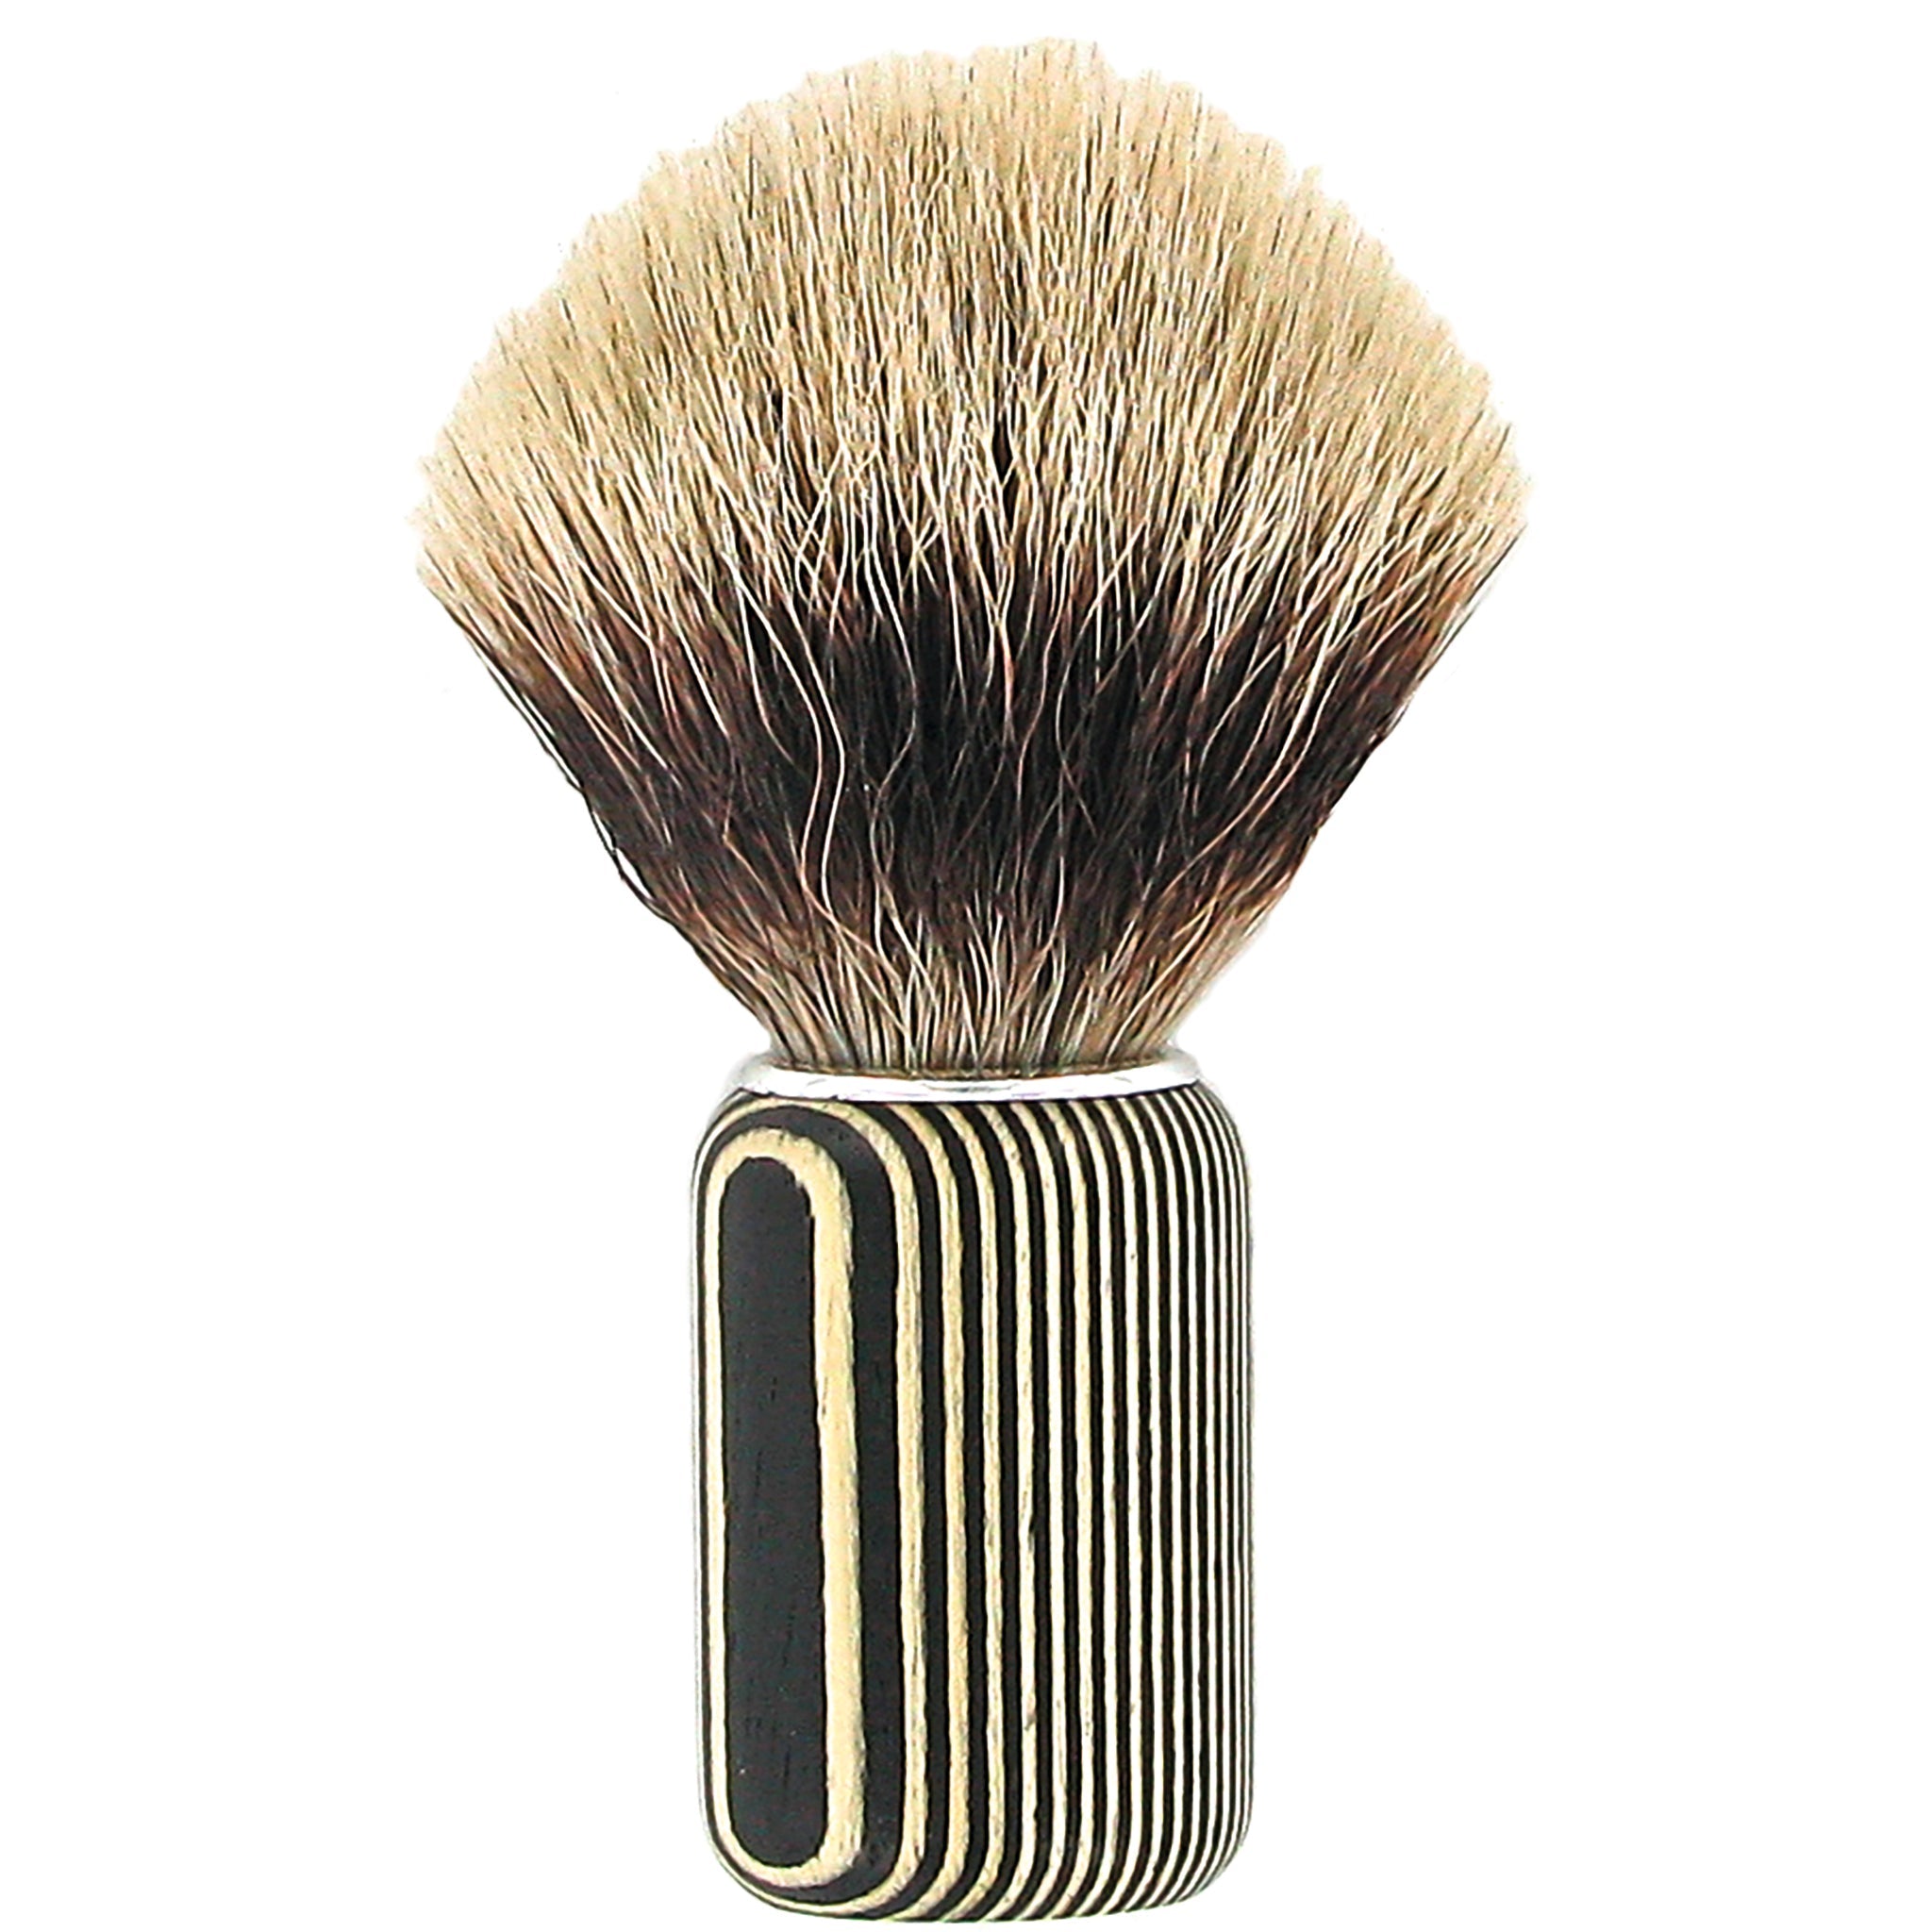 Beechwood Shaving Brush - mypure.co.uk